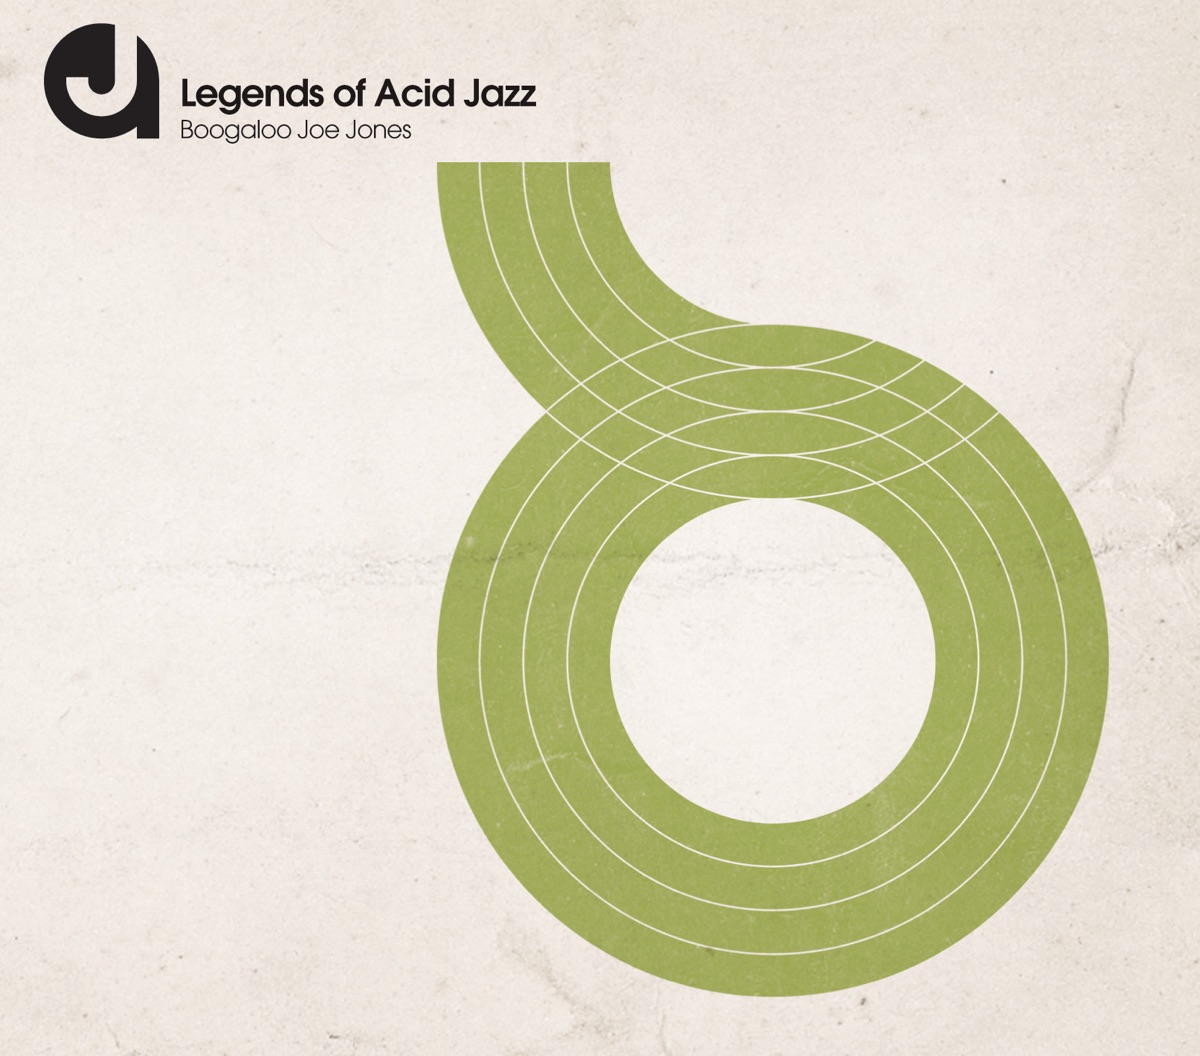 boogaloo joe jones / Legend of acid jazz